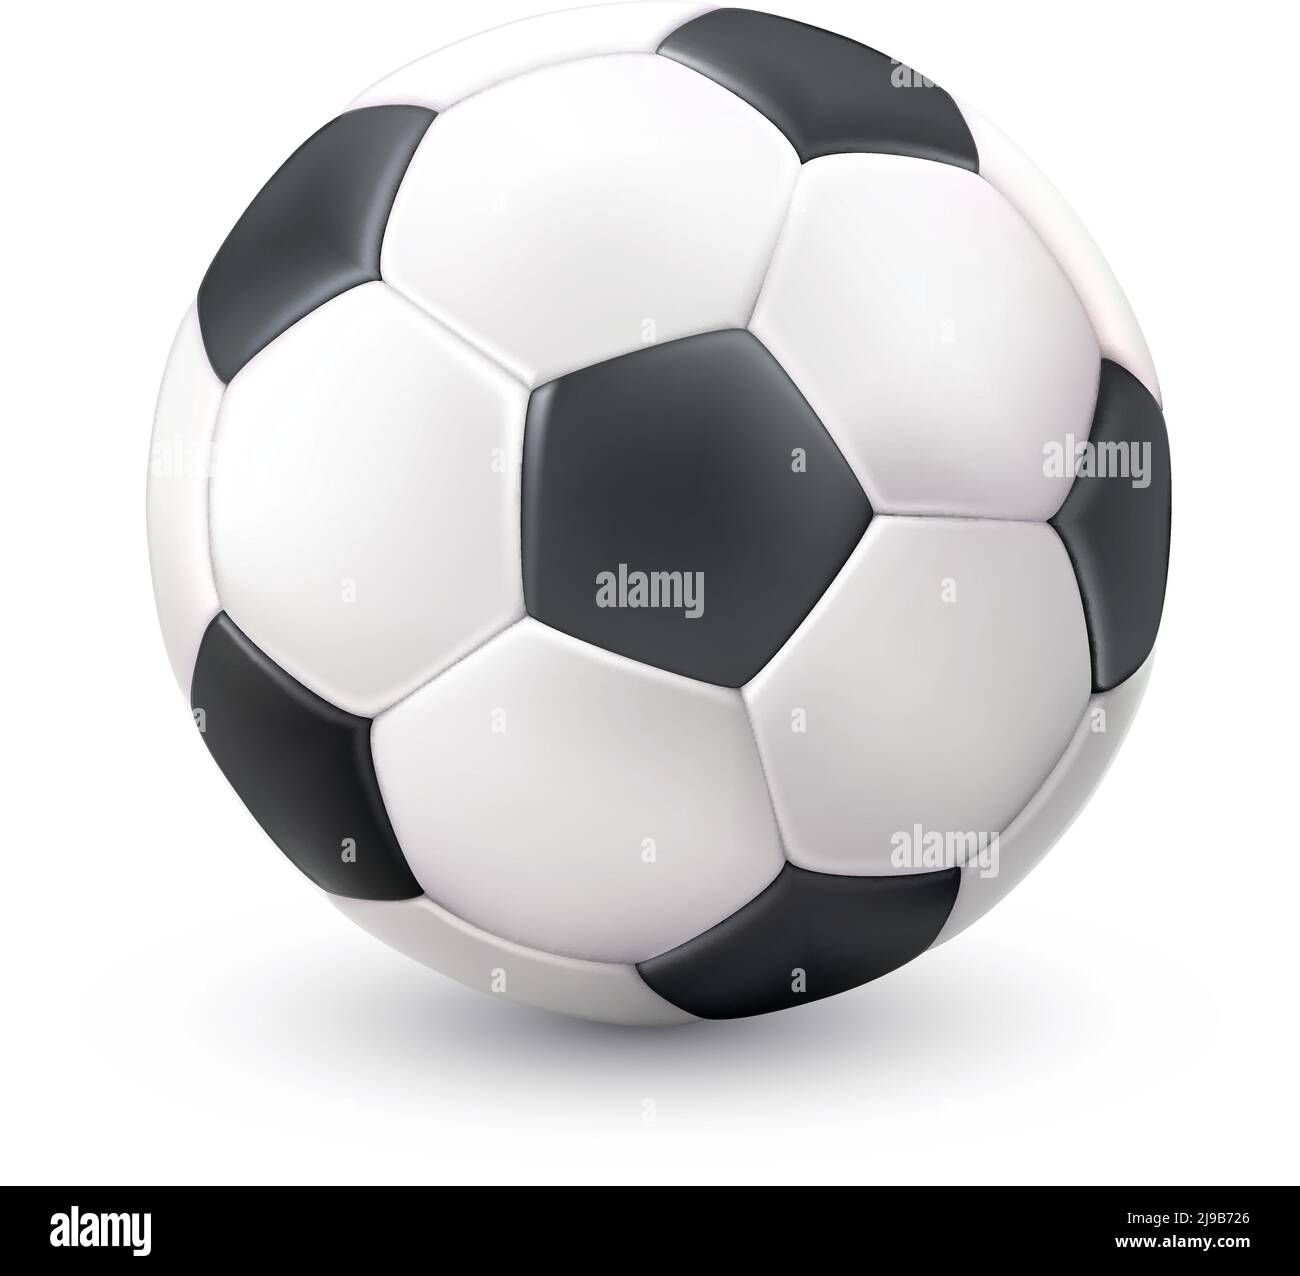 Realistico classico calcio palla da calcio bianco nero immagine con luce immagine vettoriale a oggetto singolo del pittogramma di riflessione delle ombre Illustrazione Vettoriale